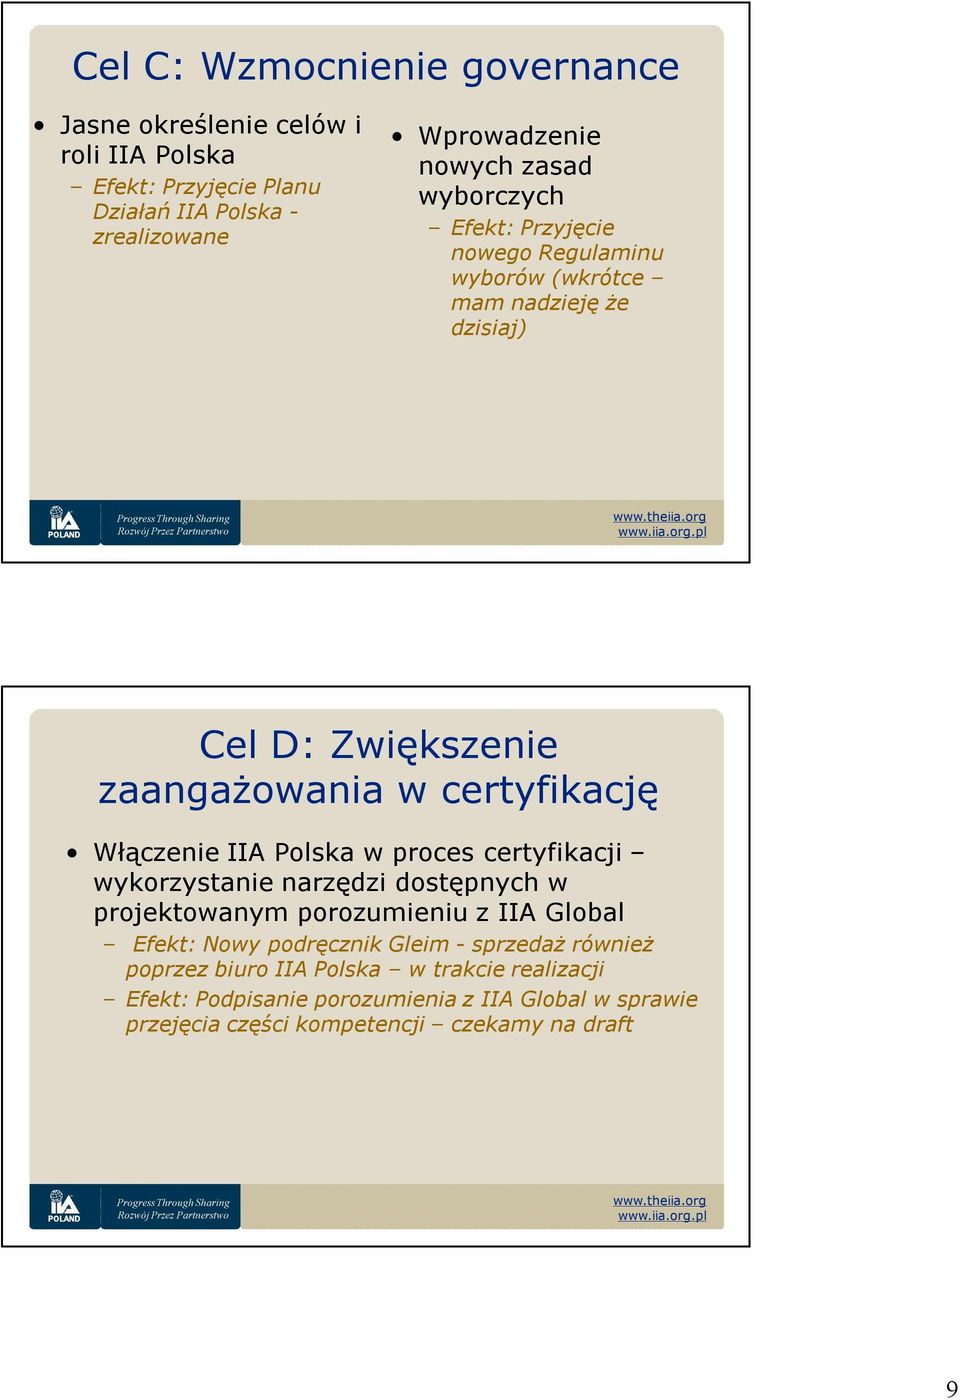 Włączenie Polska w proces certyfikacji wykorzystanie narzędzi dostępnych w projektowanym porozumieniu z Global Efekt: Nowy podręcznik Gleim -